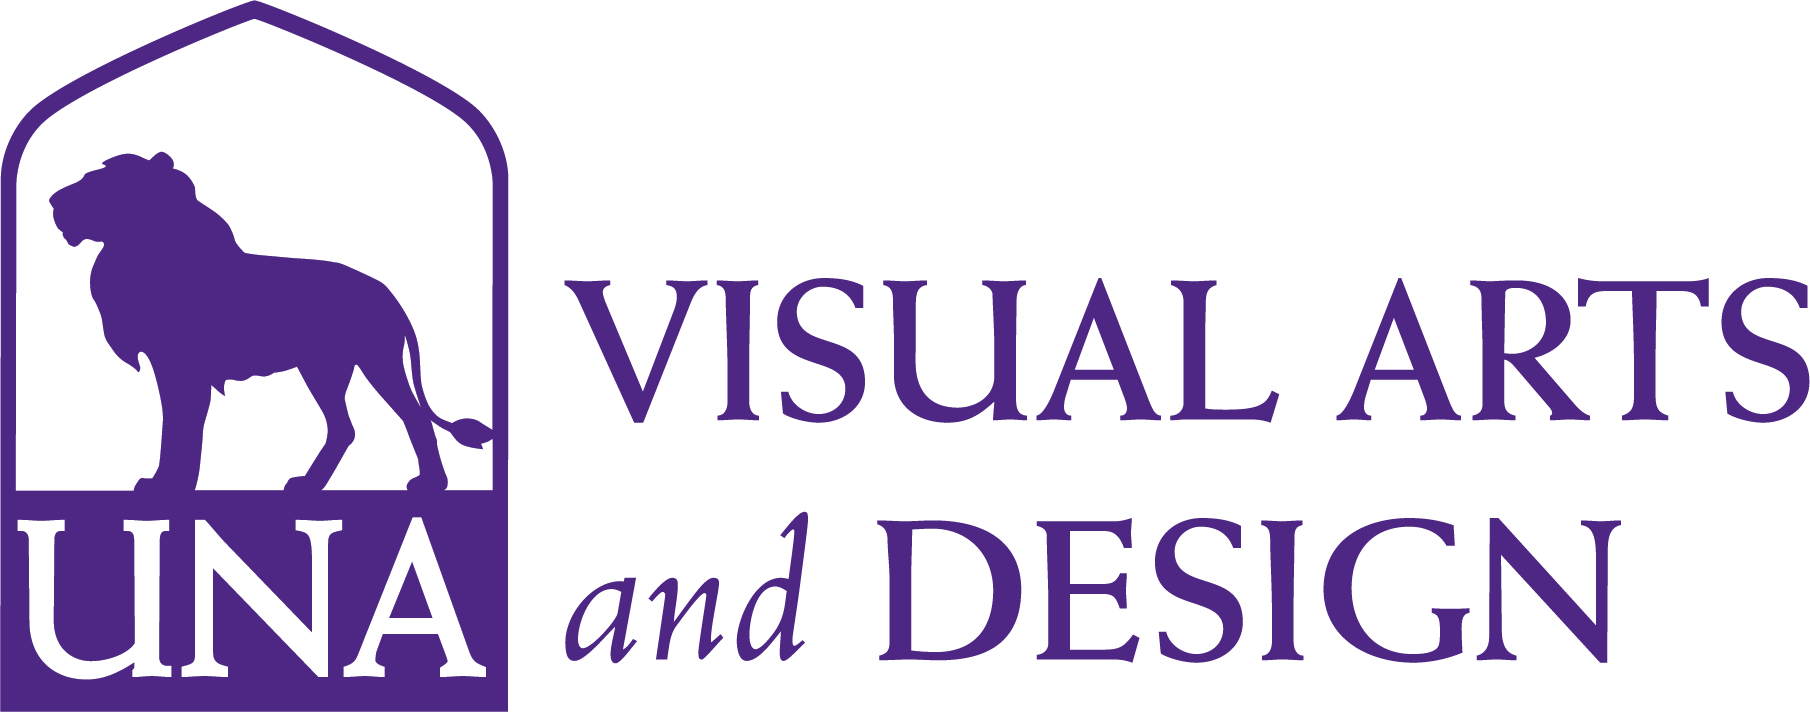 visual arts and design logo 3